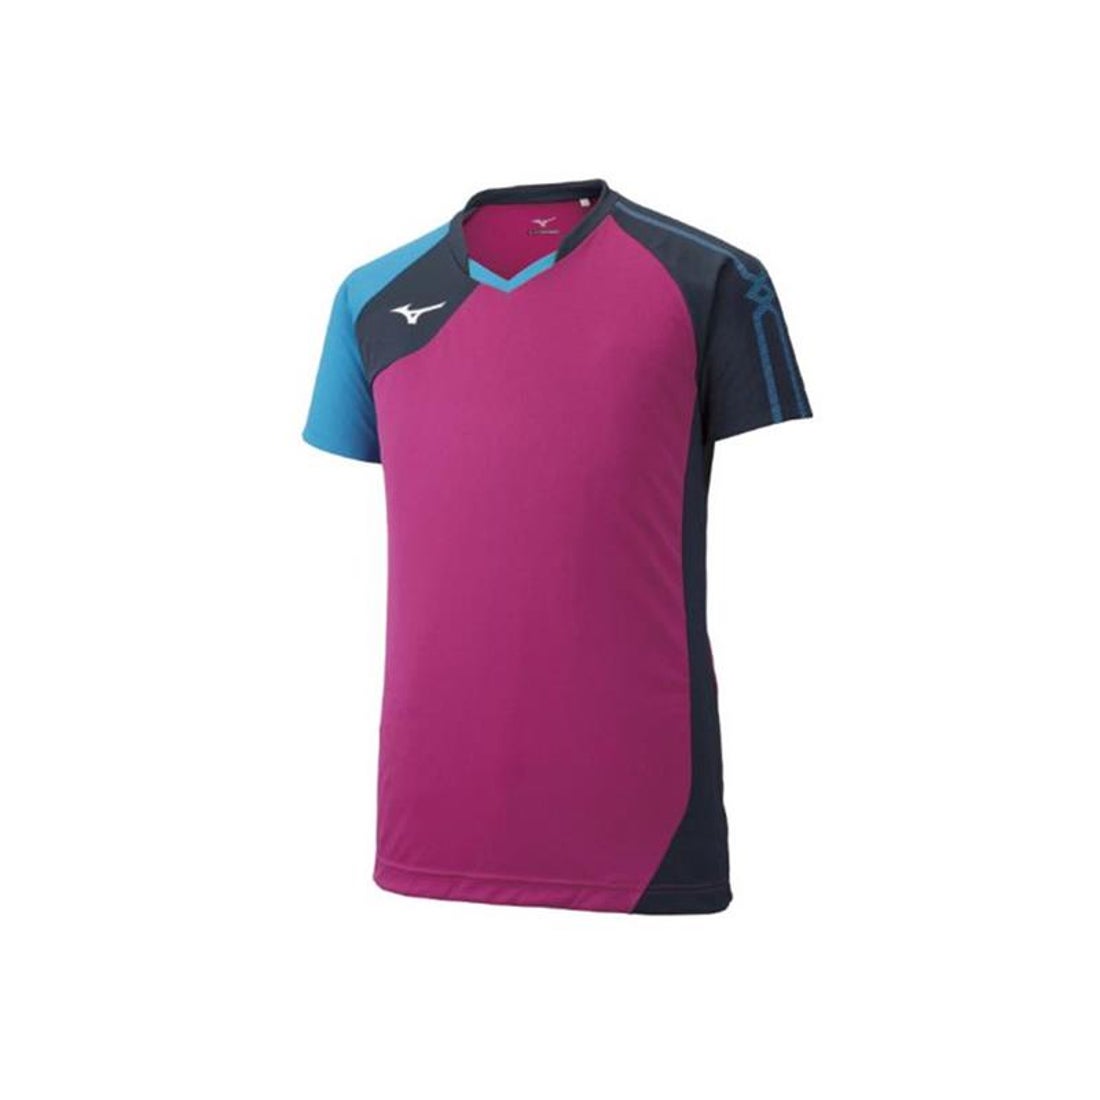 MIZUNO ミズノ ゲームシャツ(ピンク) V2MA9001 64 バレーボールウェア -【SWSバレーボール】